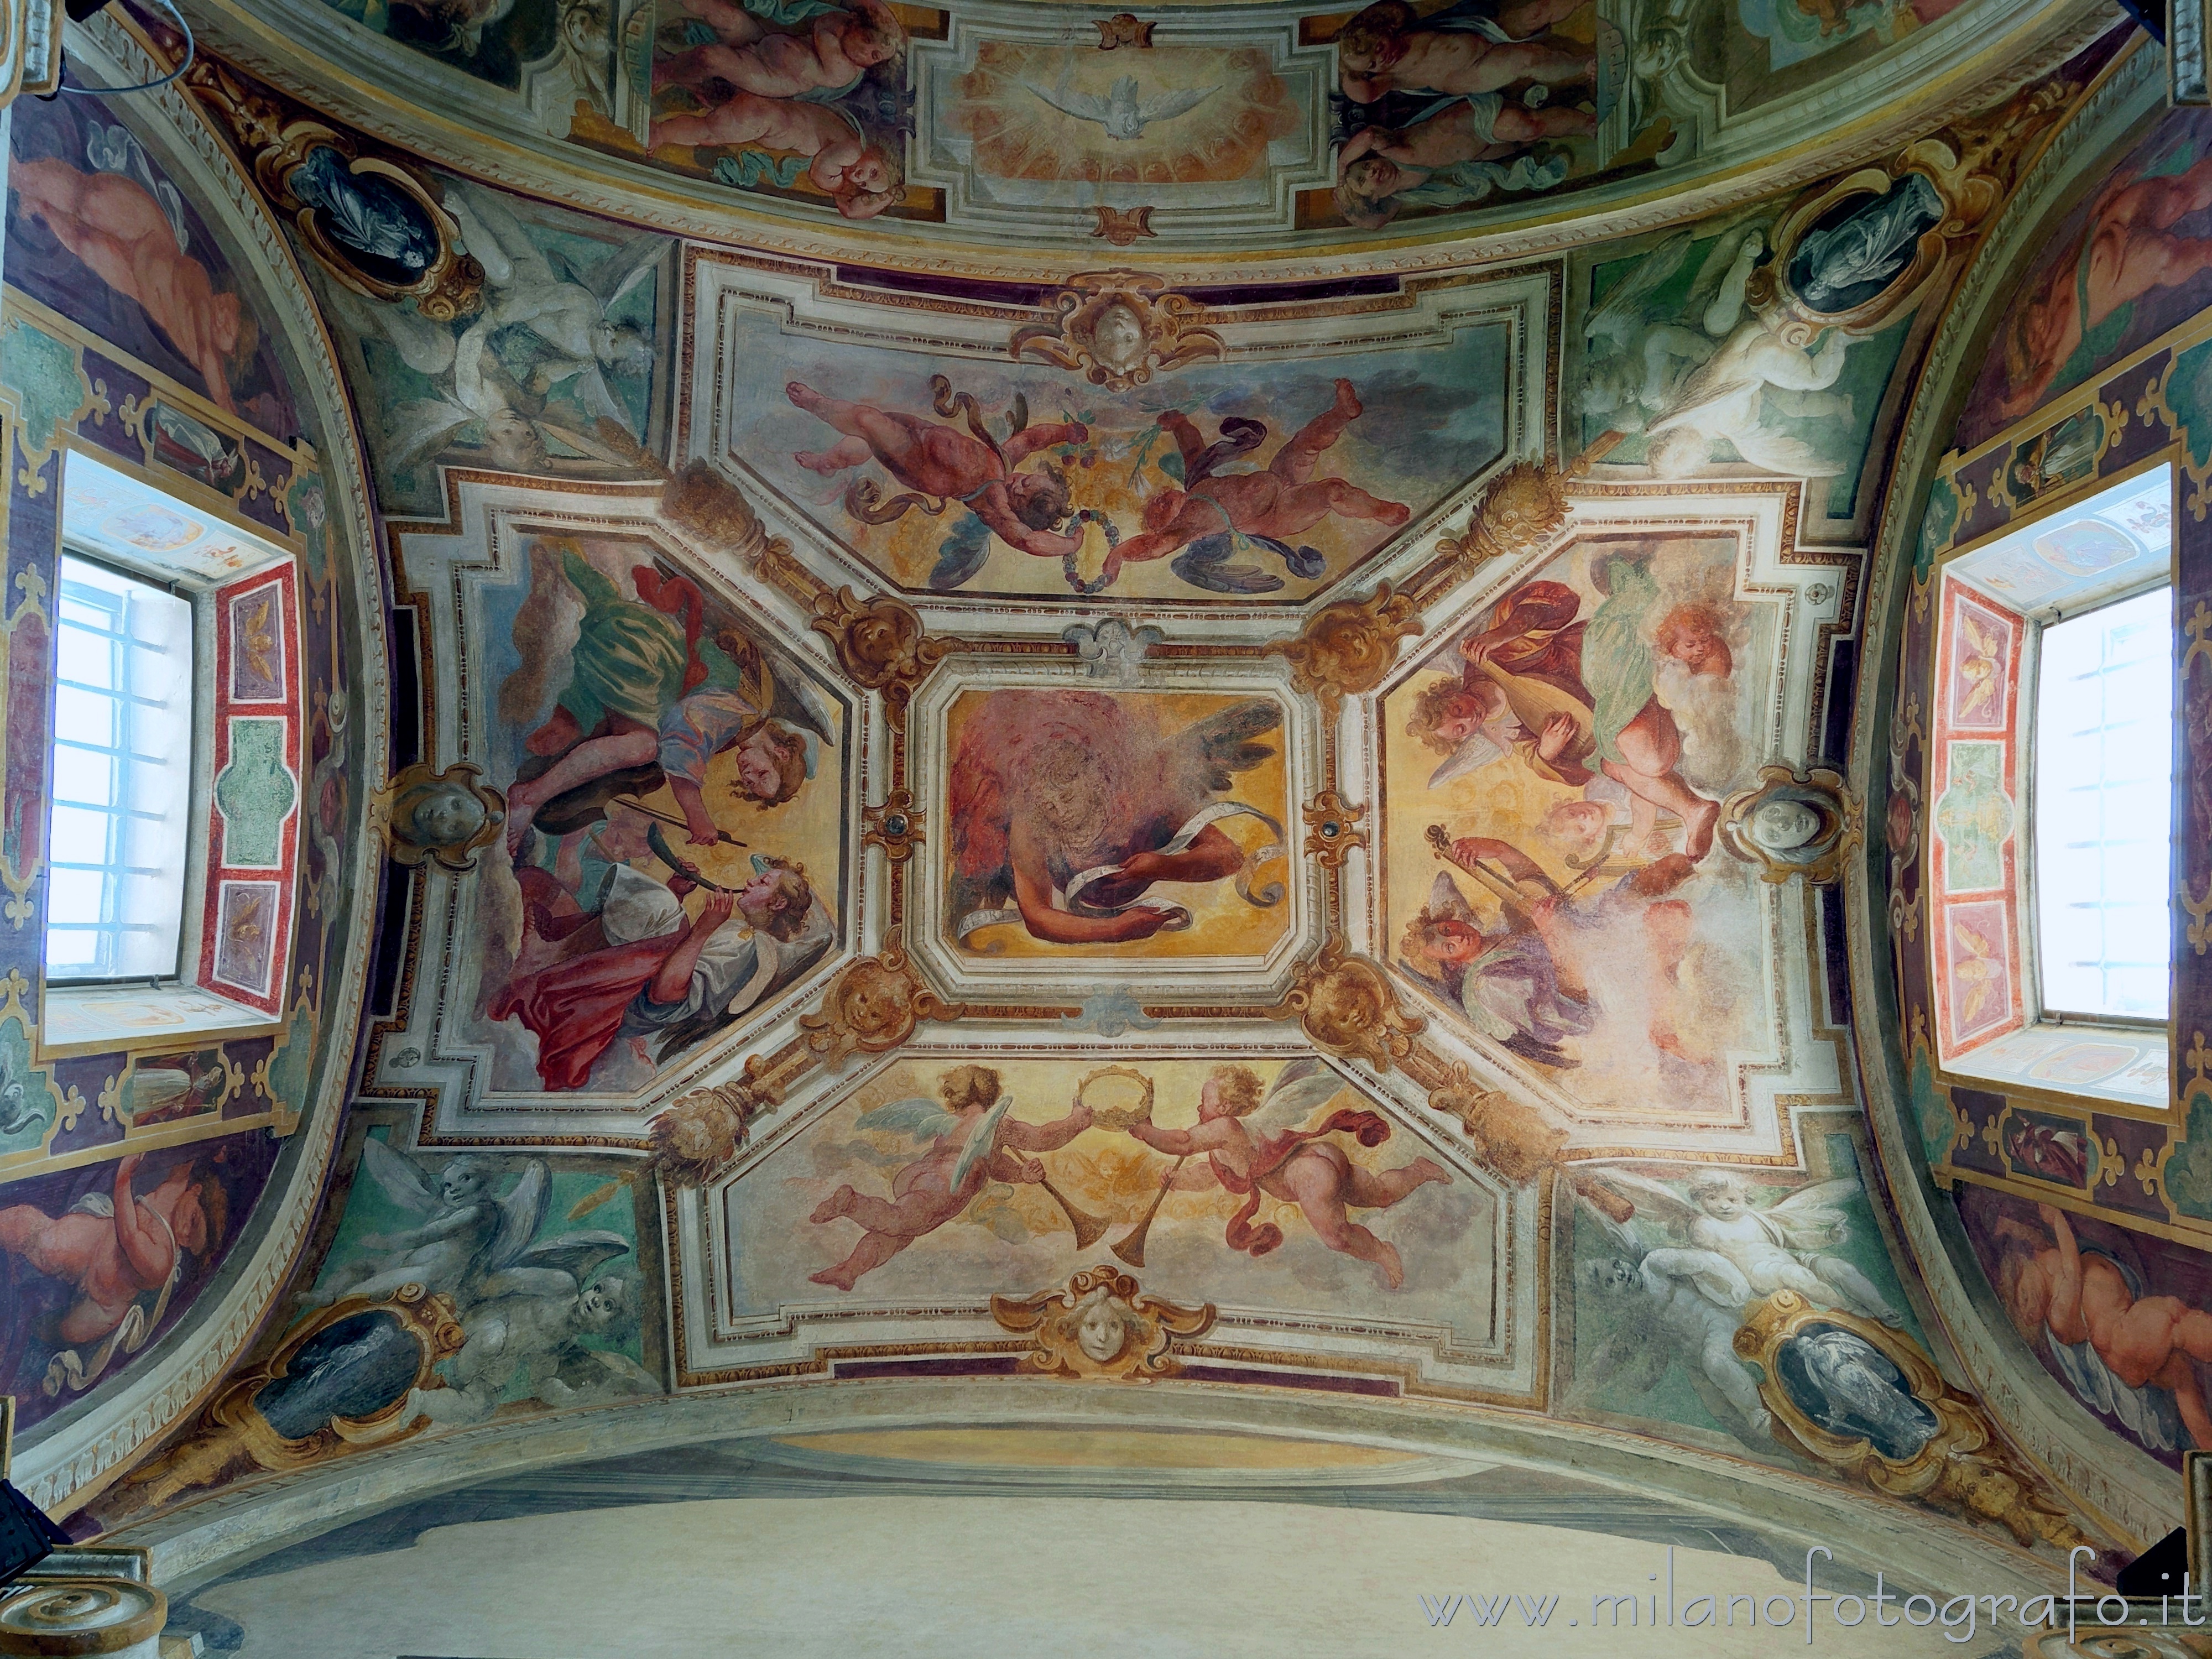 Sesto San Giovanni (Milano): Soffitto dell'Abside dell'Oratorio di Santa Margherita in Villa Torretta - Sesto San Giovanni (Milano)